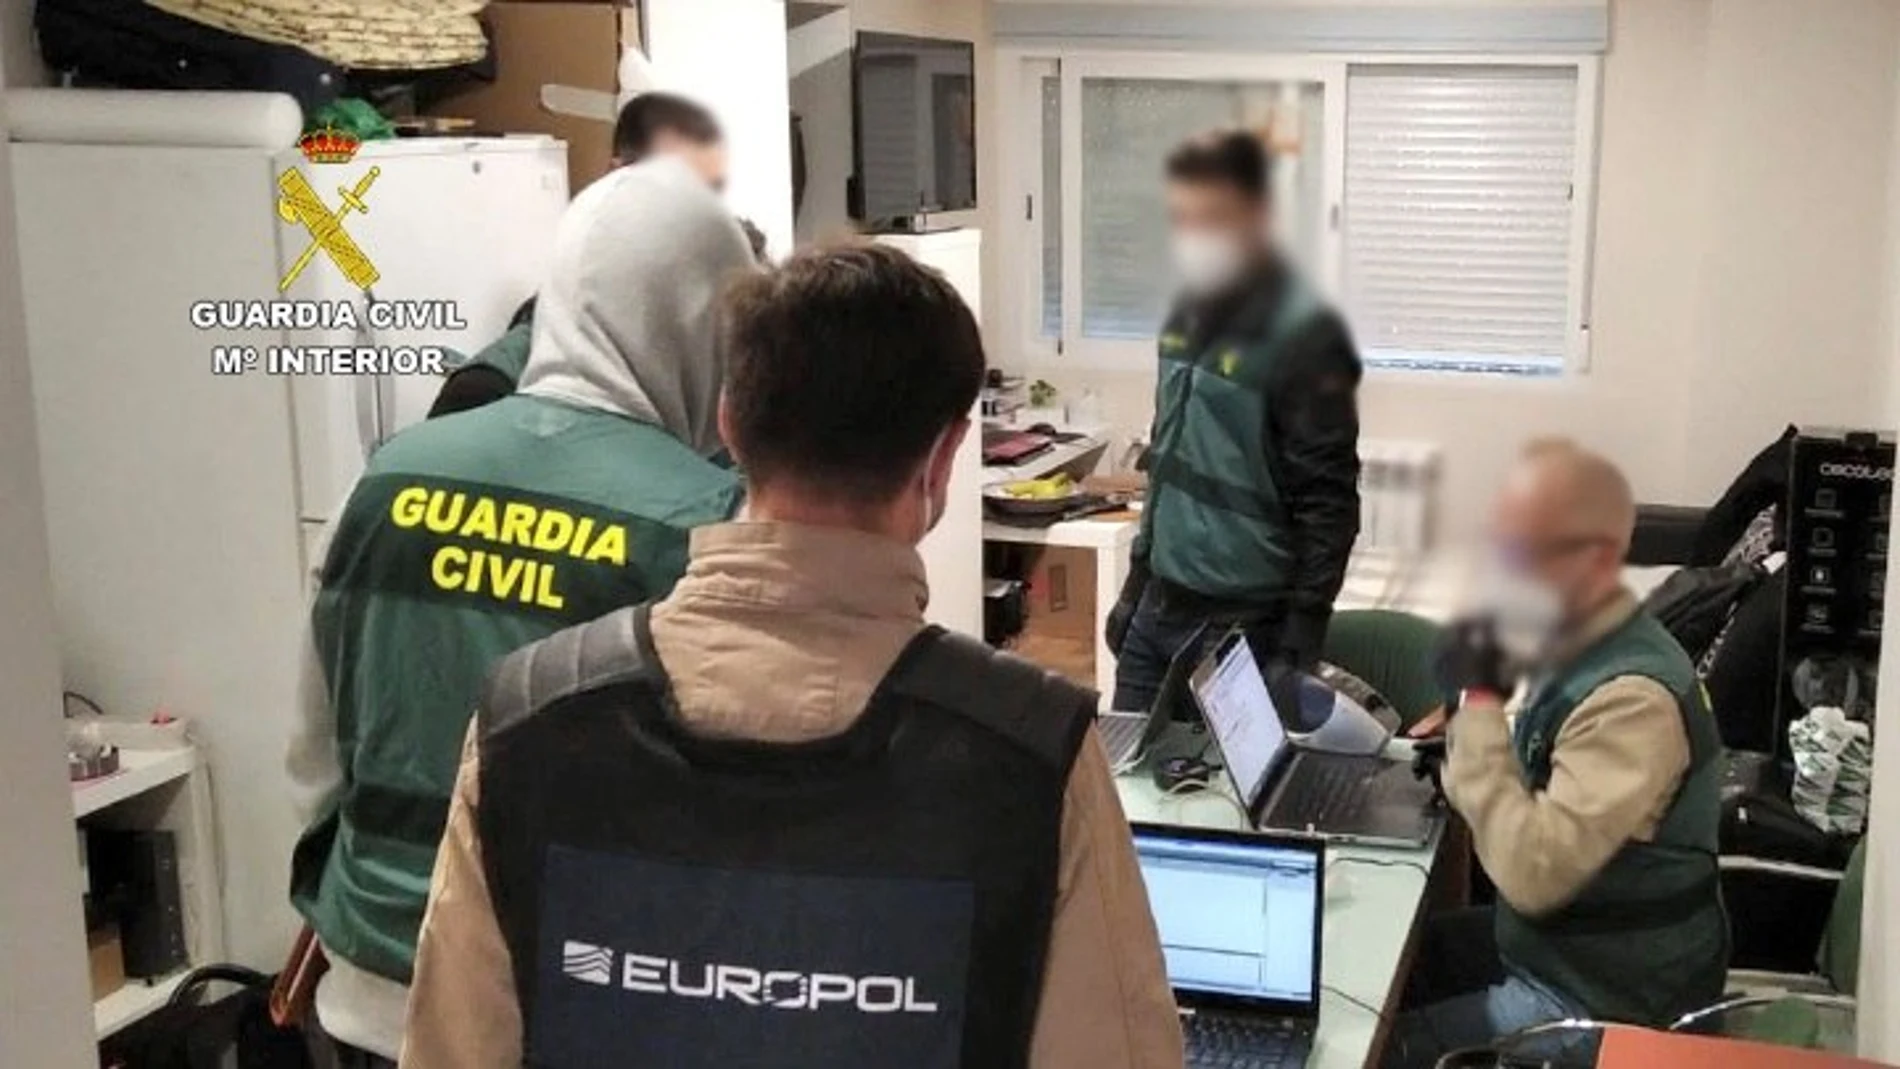 La Guardia Civil y la Europol durante una detención en Madrid en una foto de archivo